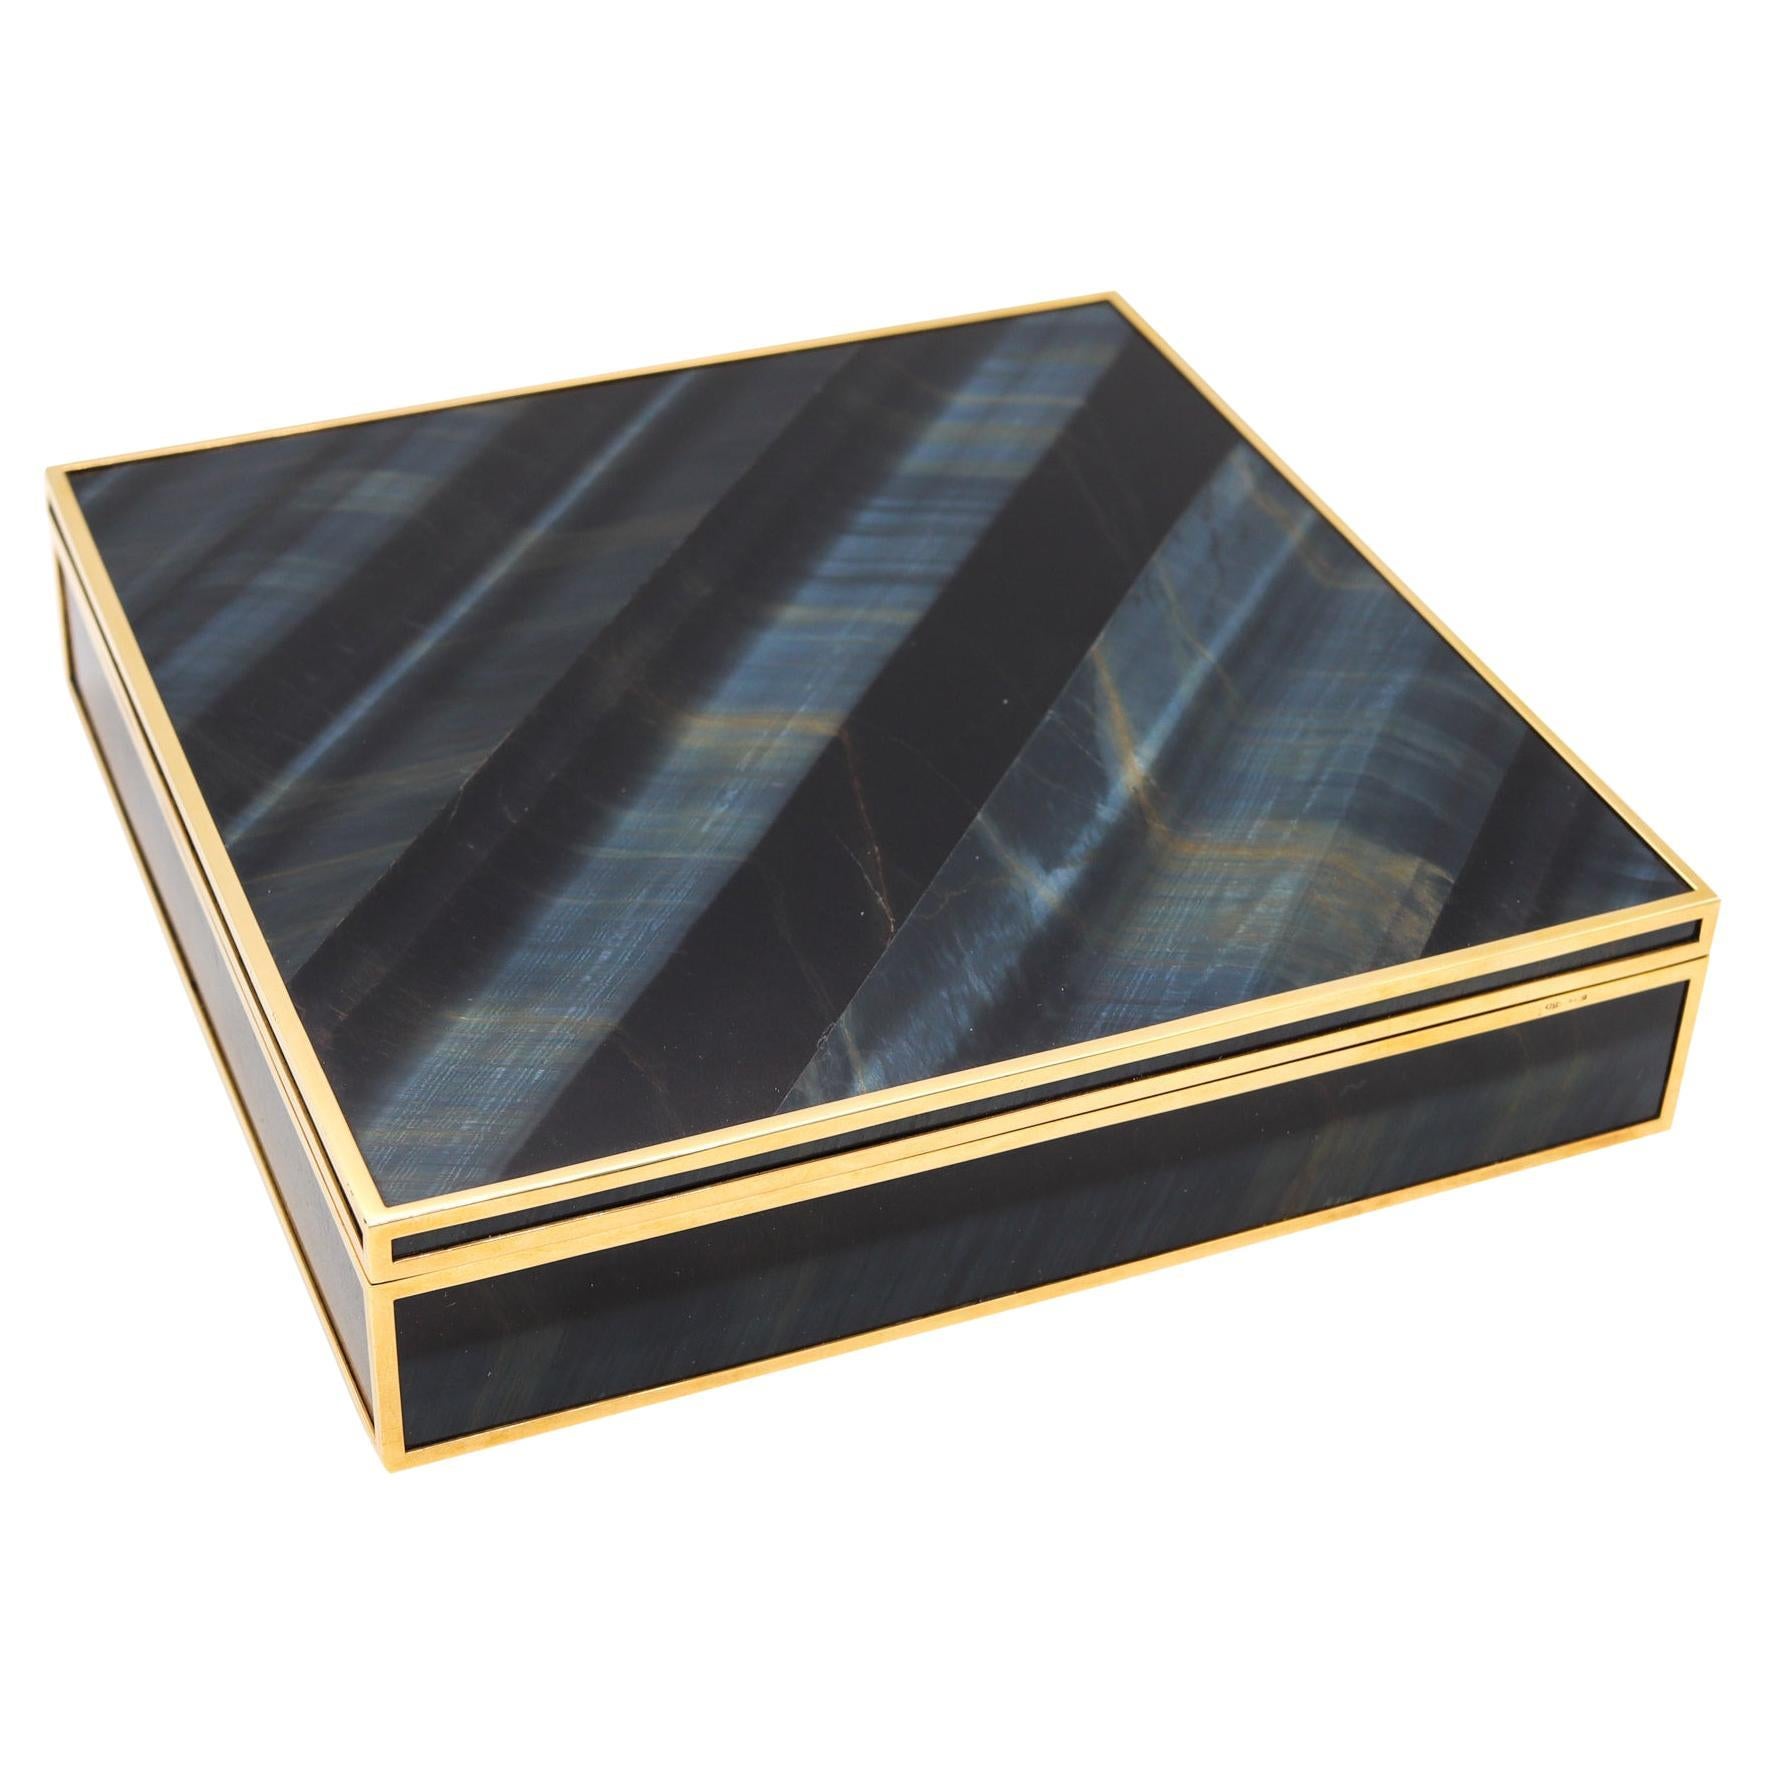 Fasano Torino Luxury Desk Box in 18kt Yellow Gold with Rare Blue Hawk Eye Quartz For Sale